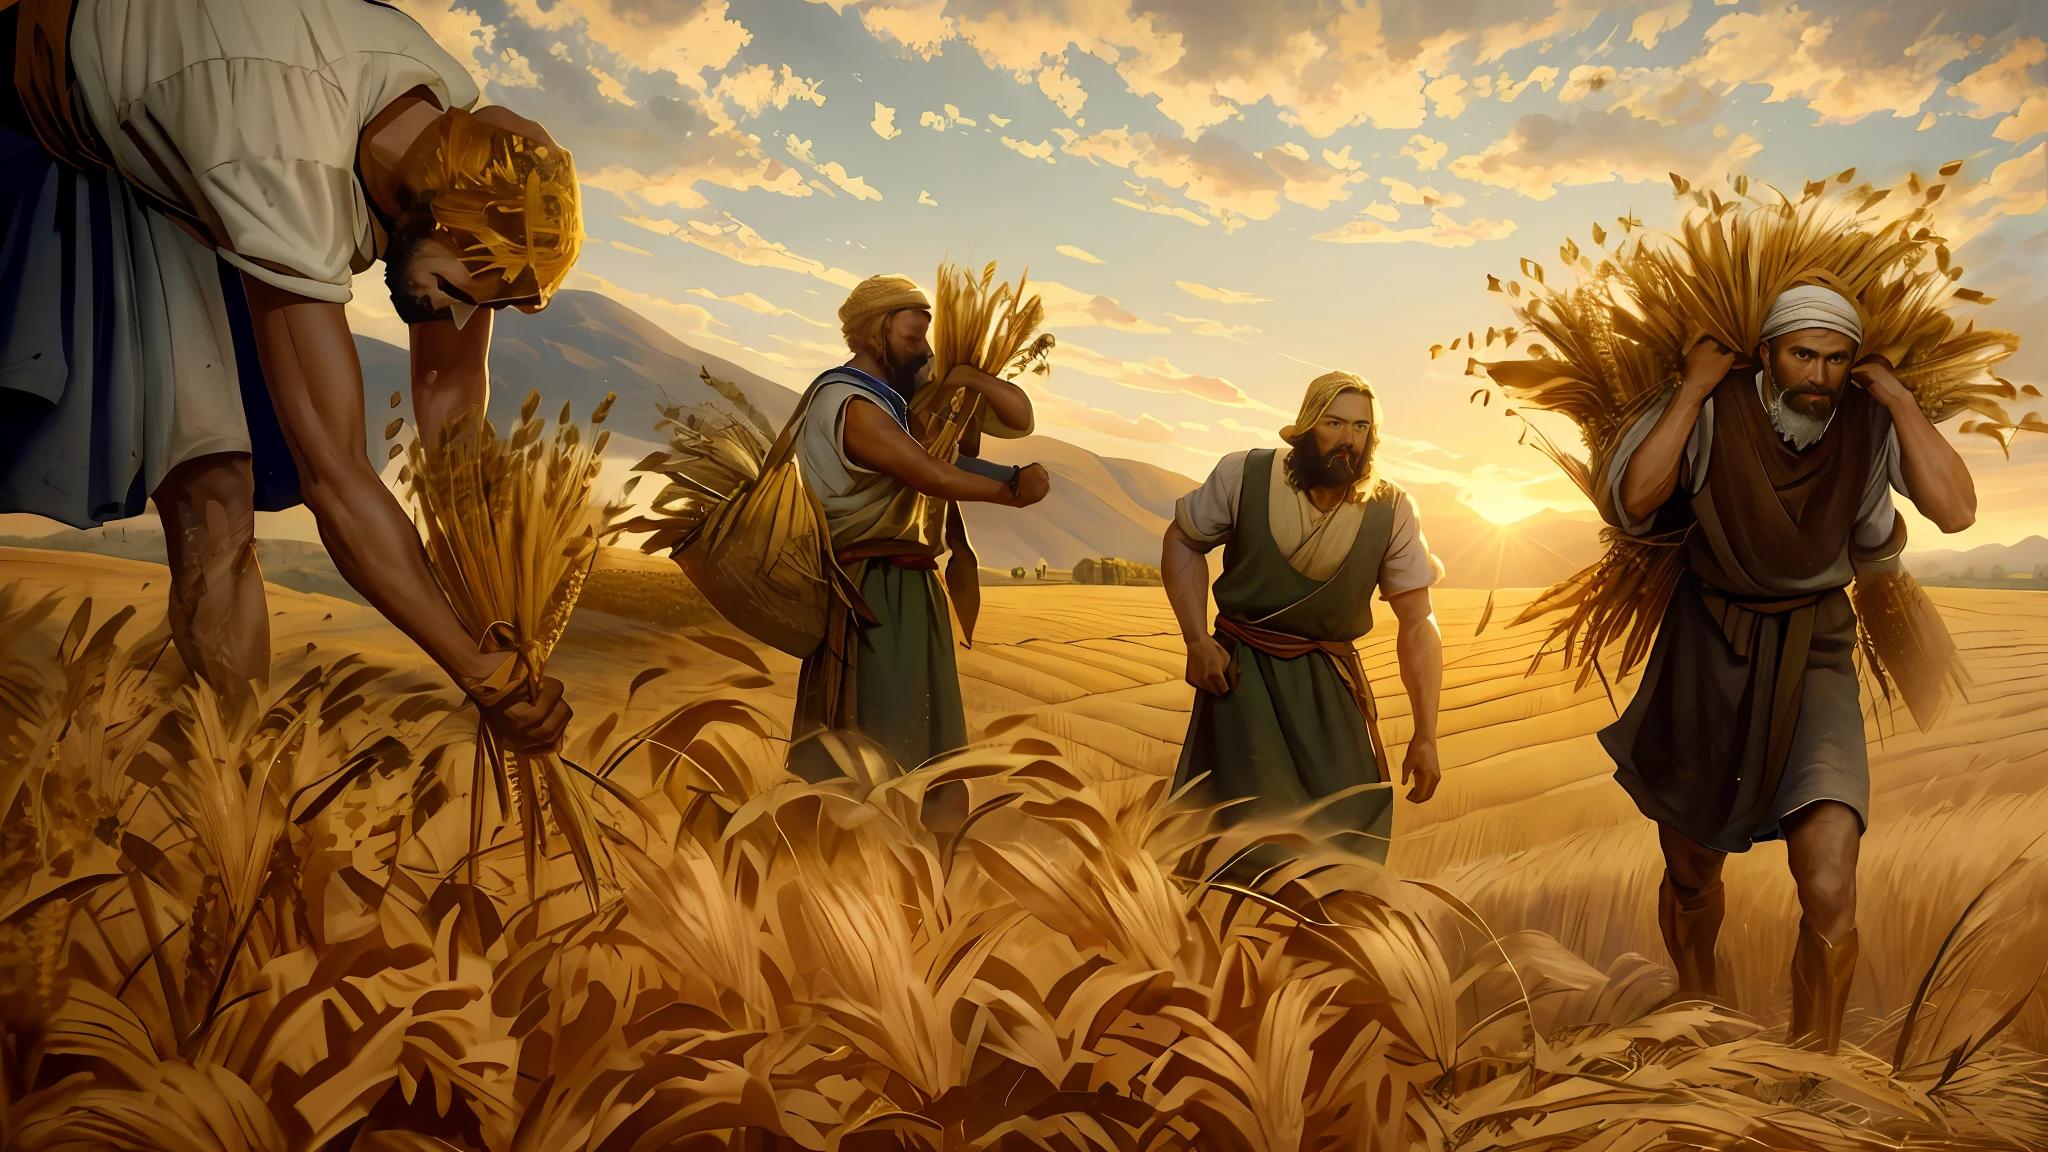 картина маслом, трое мужчин собирают пшеницу в поле, плантация пшеницы, эпическое библейское представление, 8к ухд, кинематографическое освещение, высокое качество.